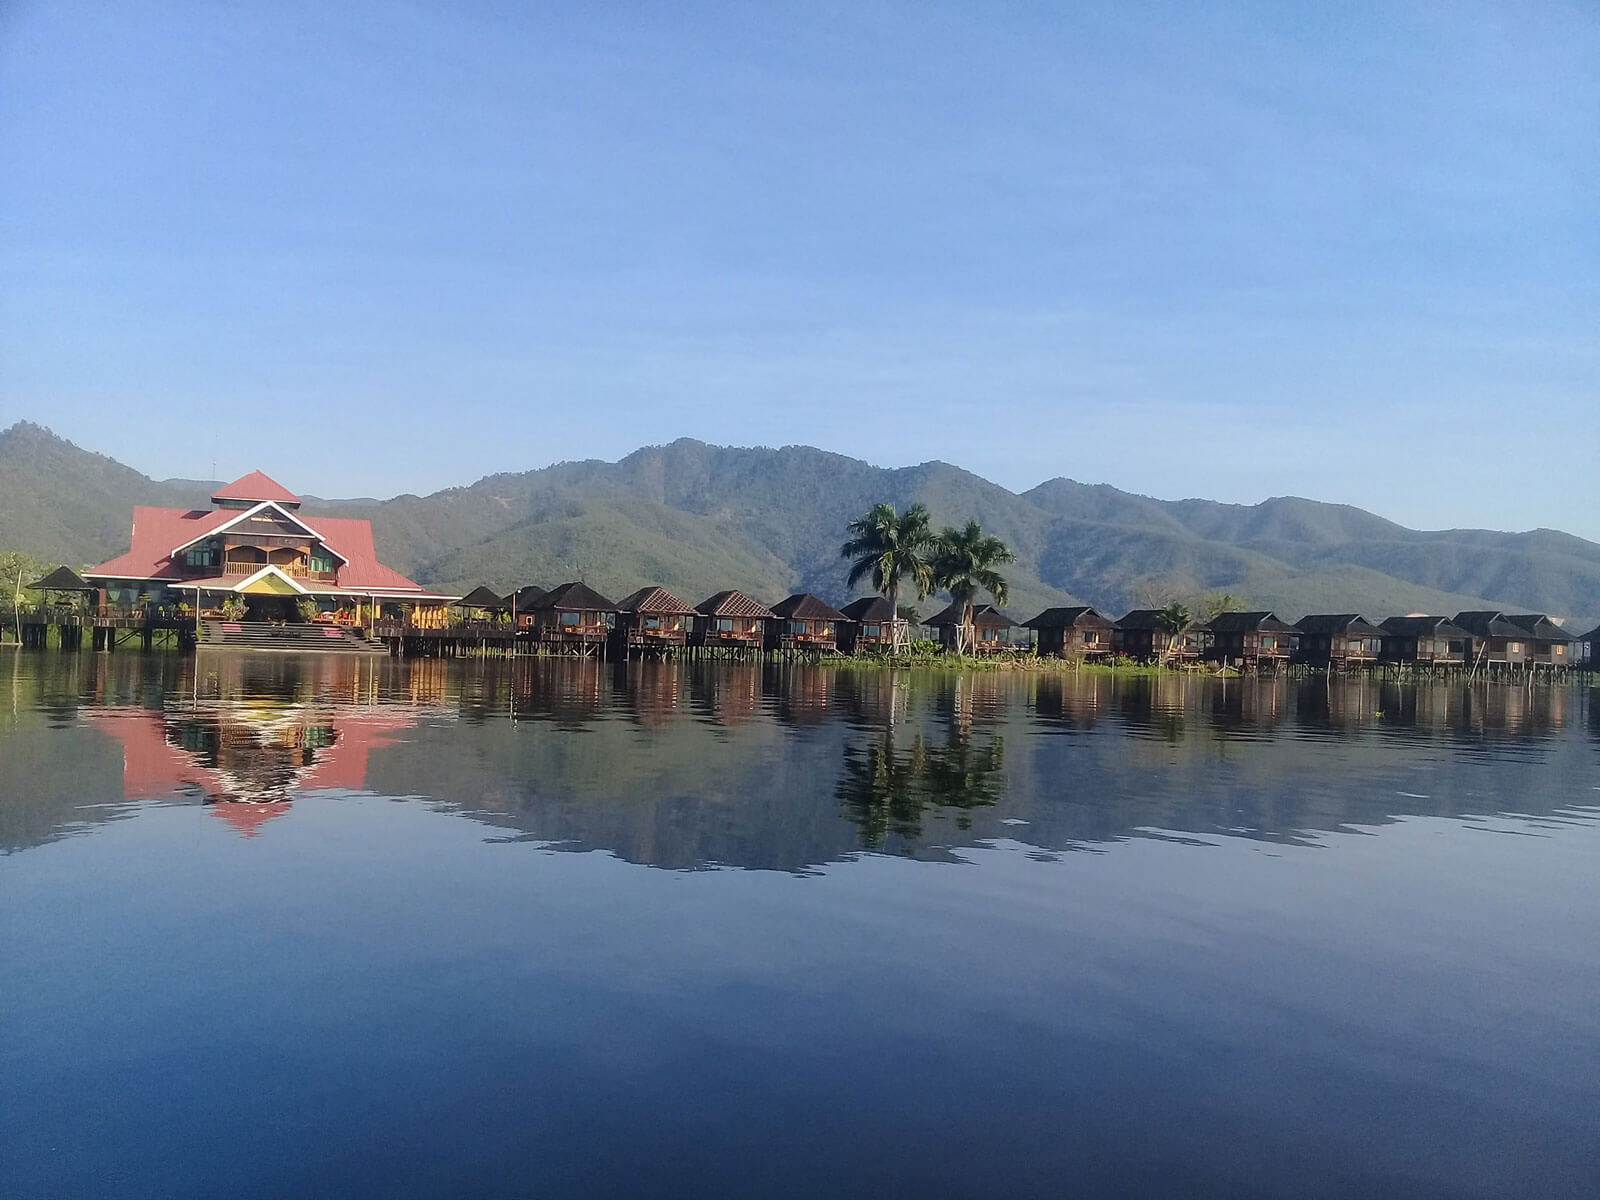 Golden Island Cottages II (Thale U) - Inle Lake, Myanmar